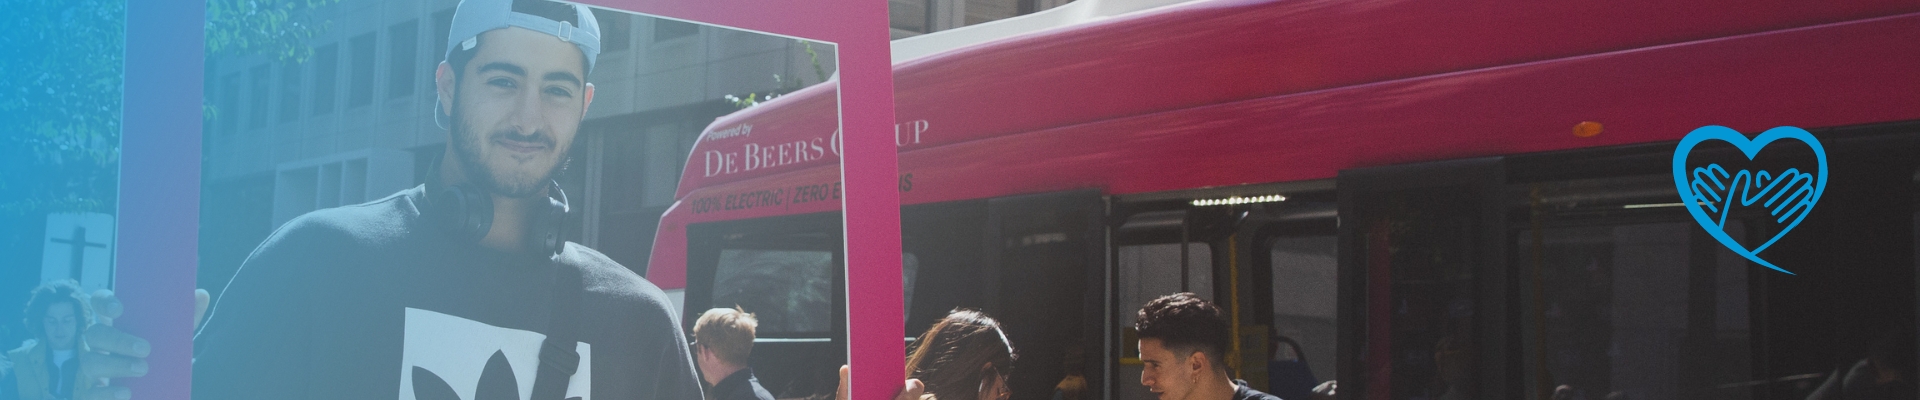 Jugendlicher hält ein HeForShe Plakat